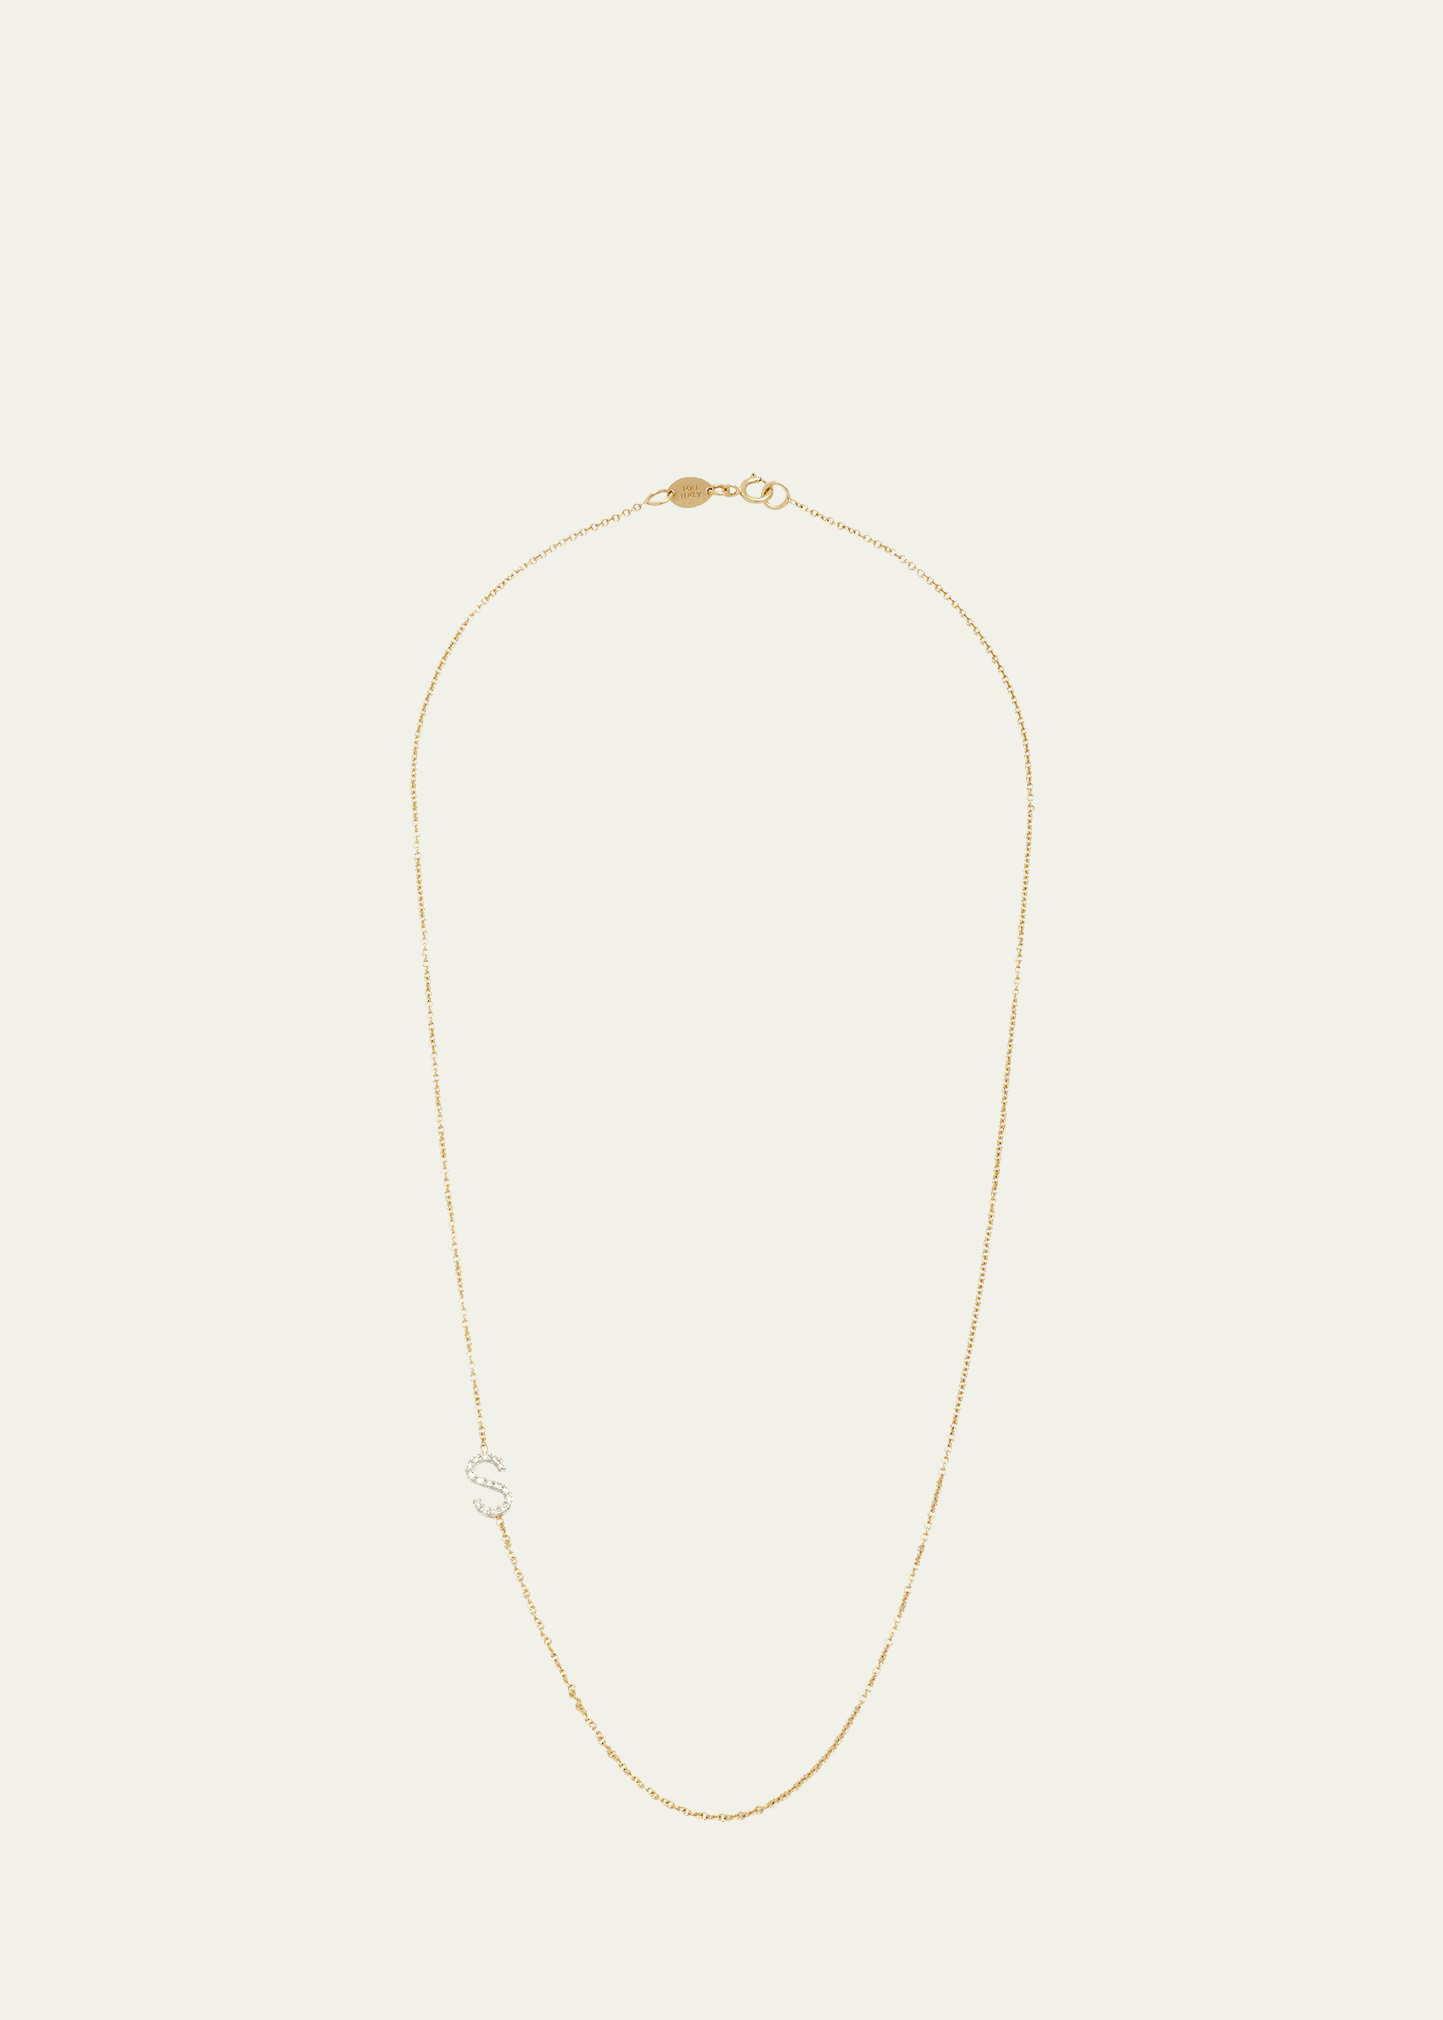 Zoe Lev Jewelry 14k Gold Personalized 0.11ct Asymmetric Diamond Initial Necklace